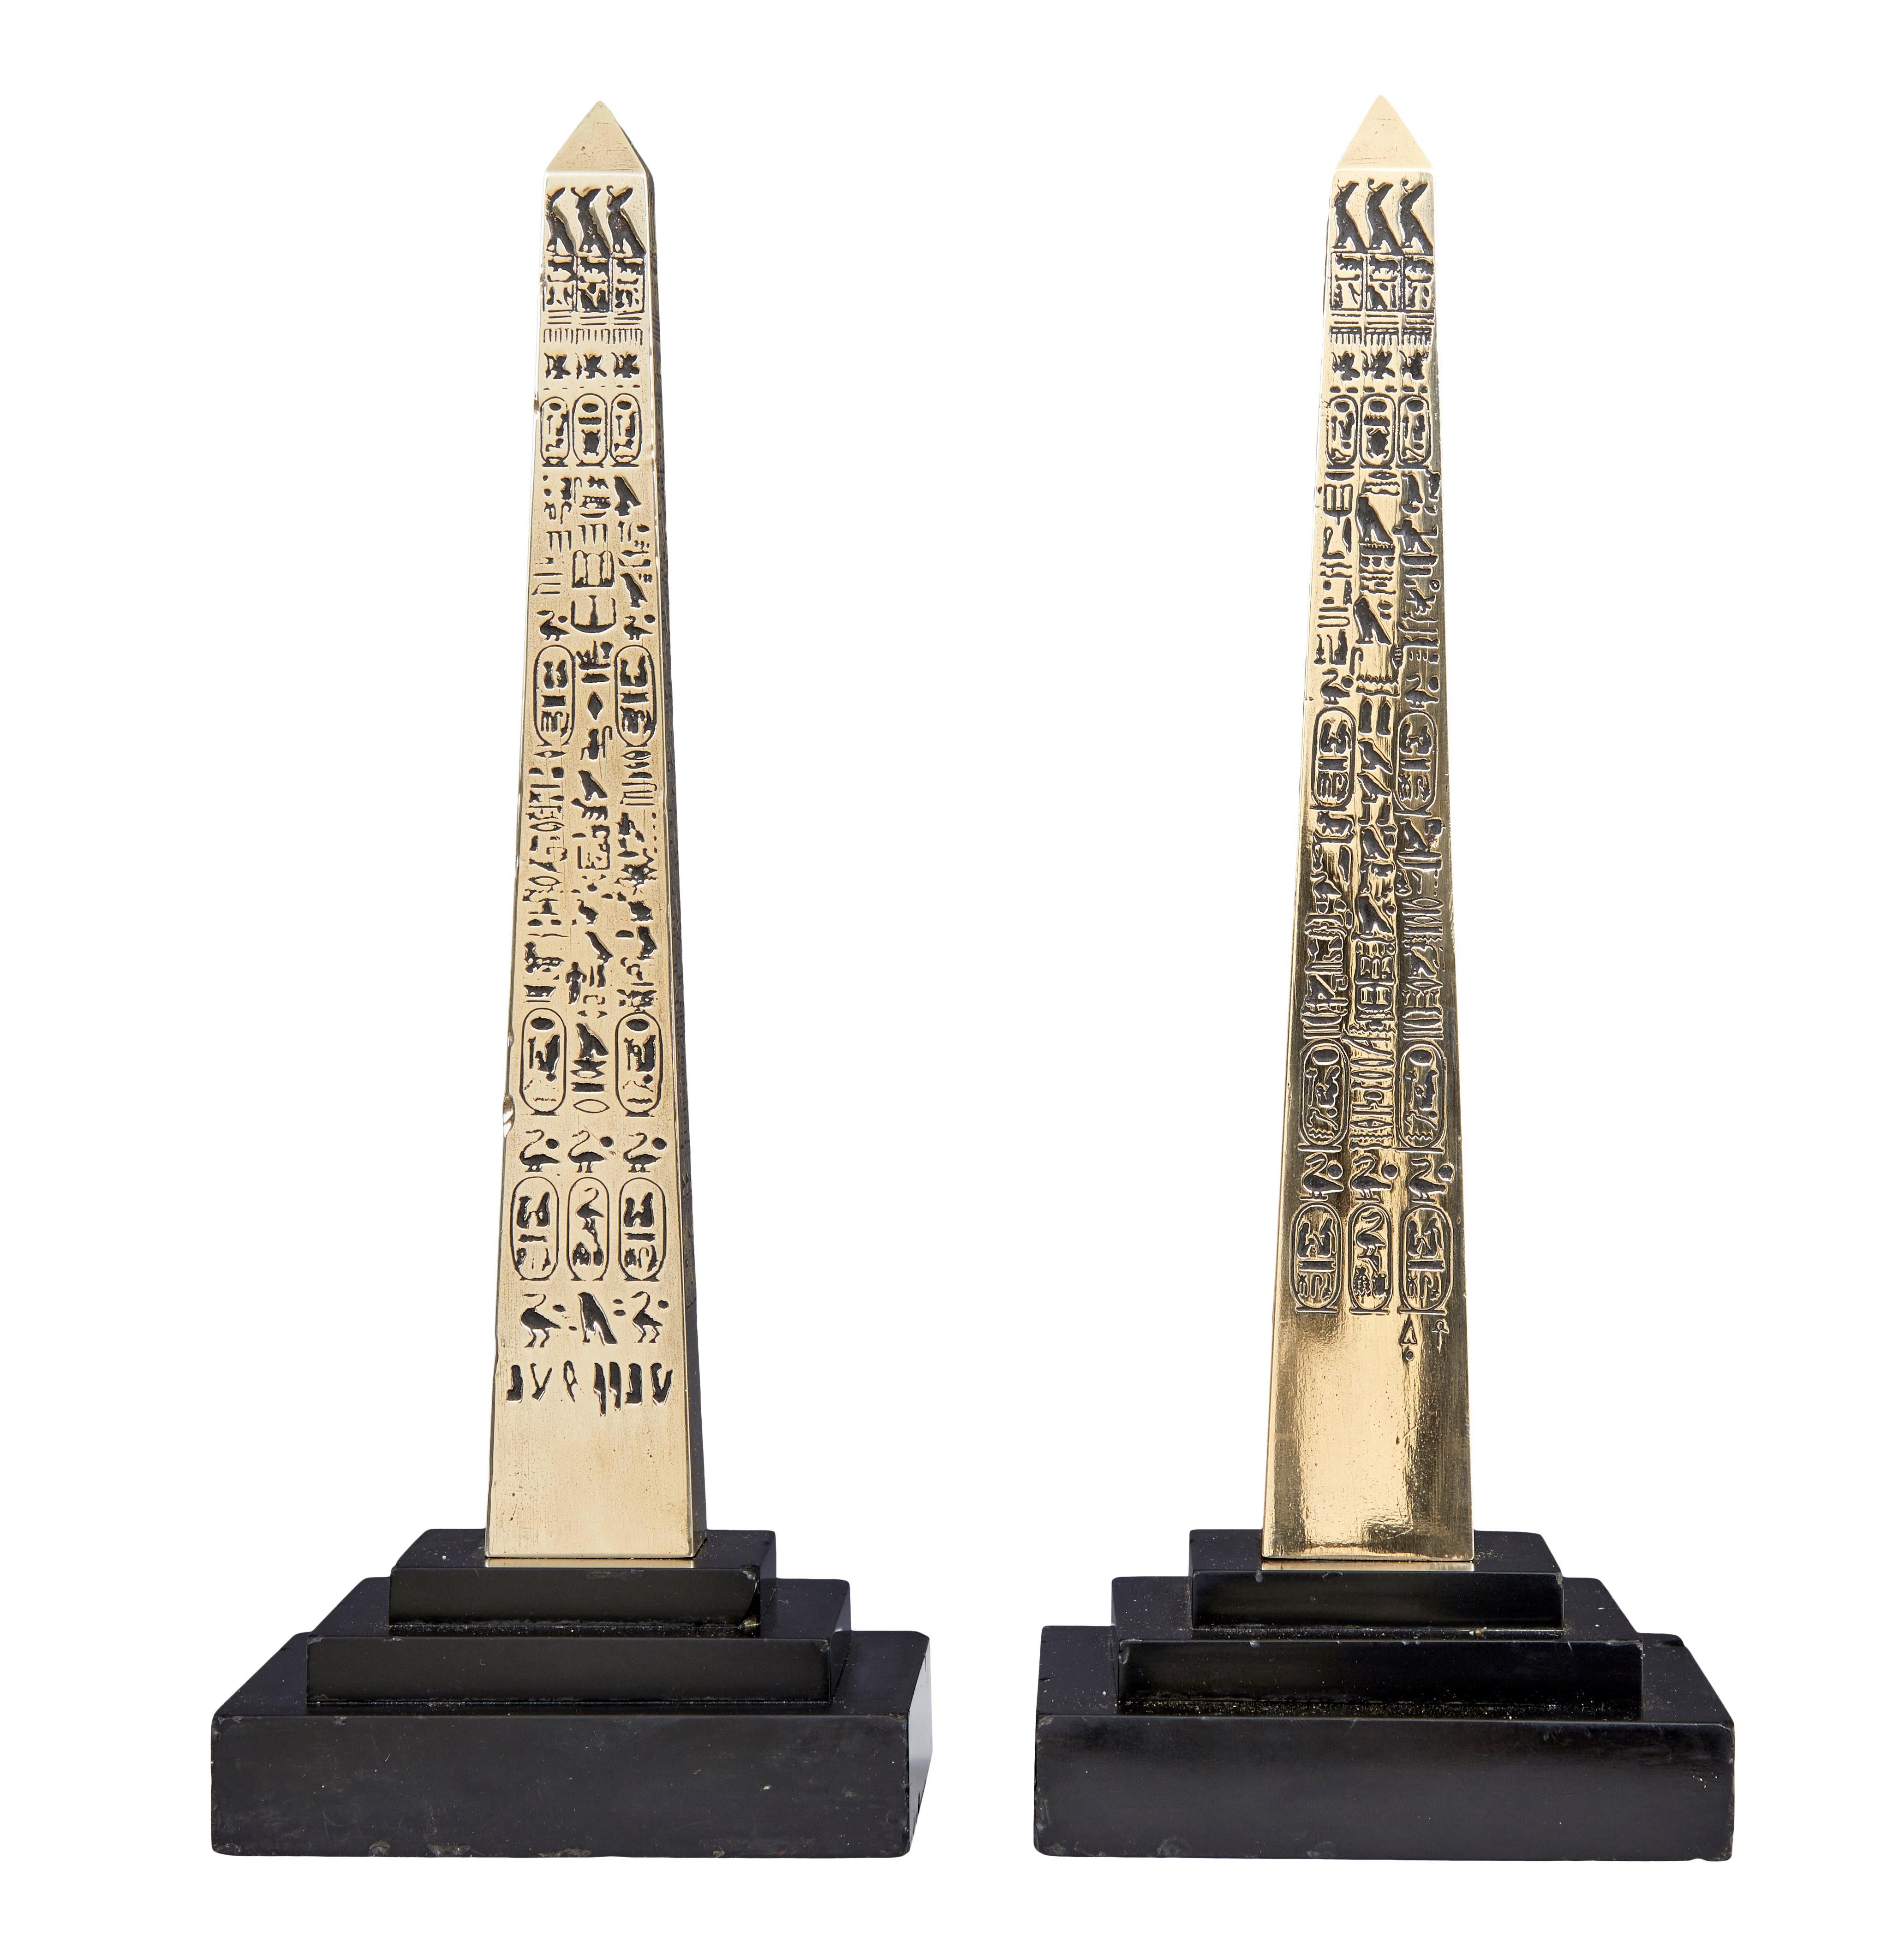 ägyptische obelisken